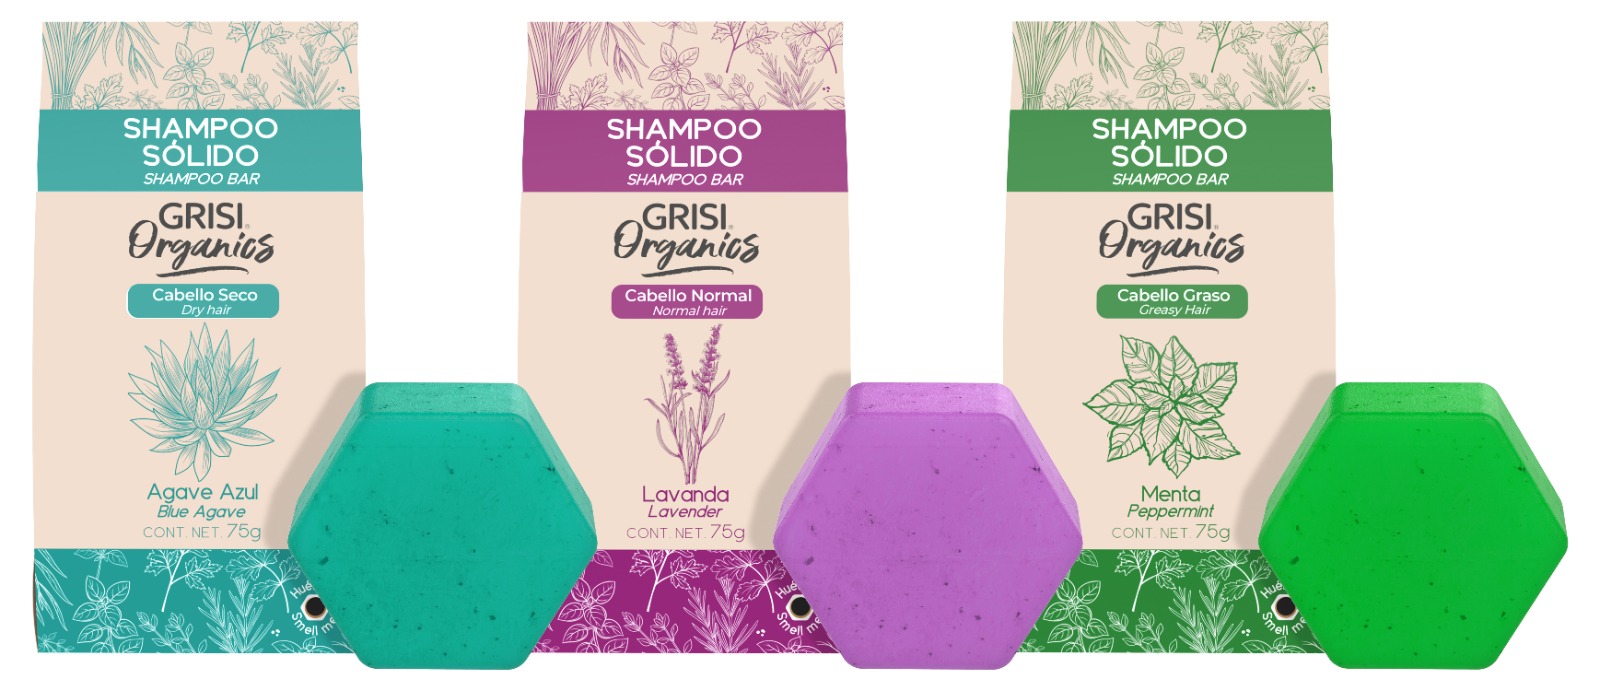 5 ventajas de usar shampoo sólido para cuidar tu cabello y al planeta